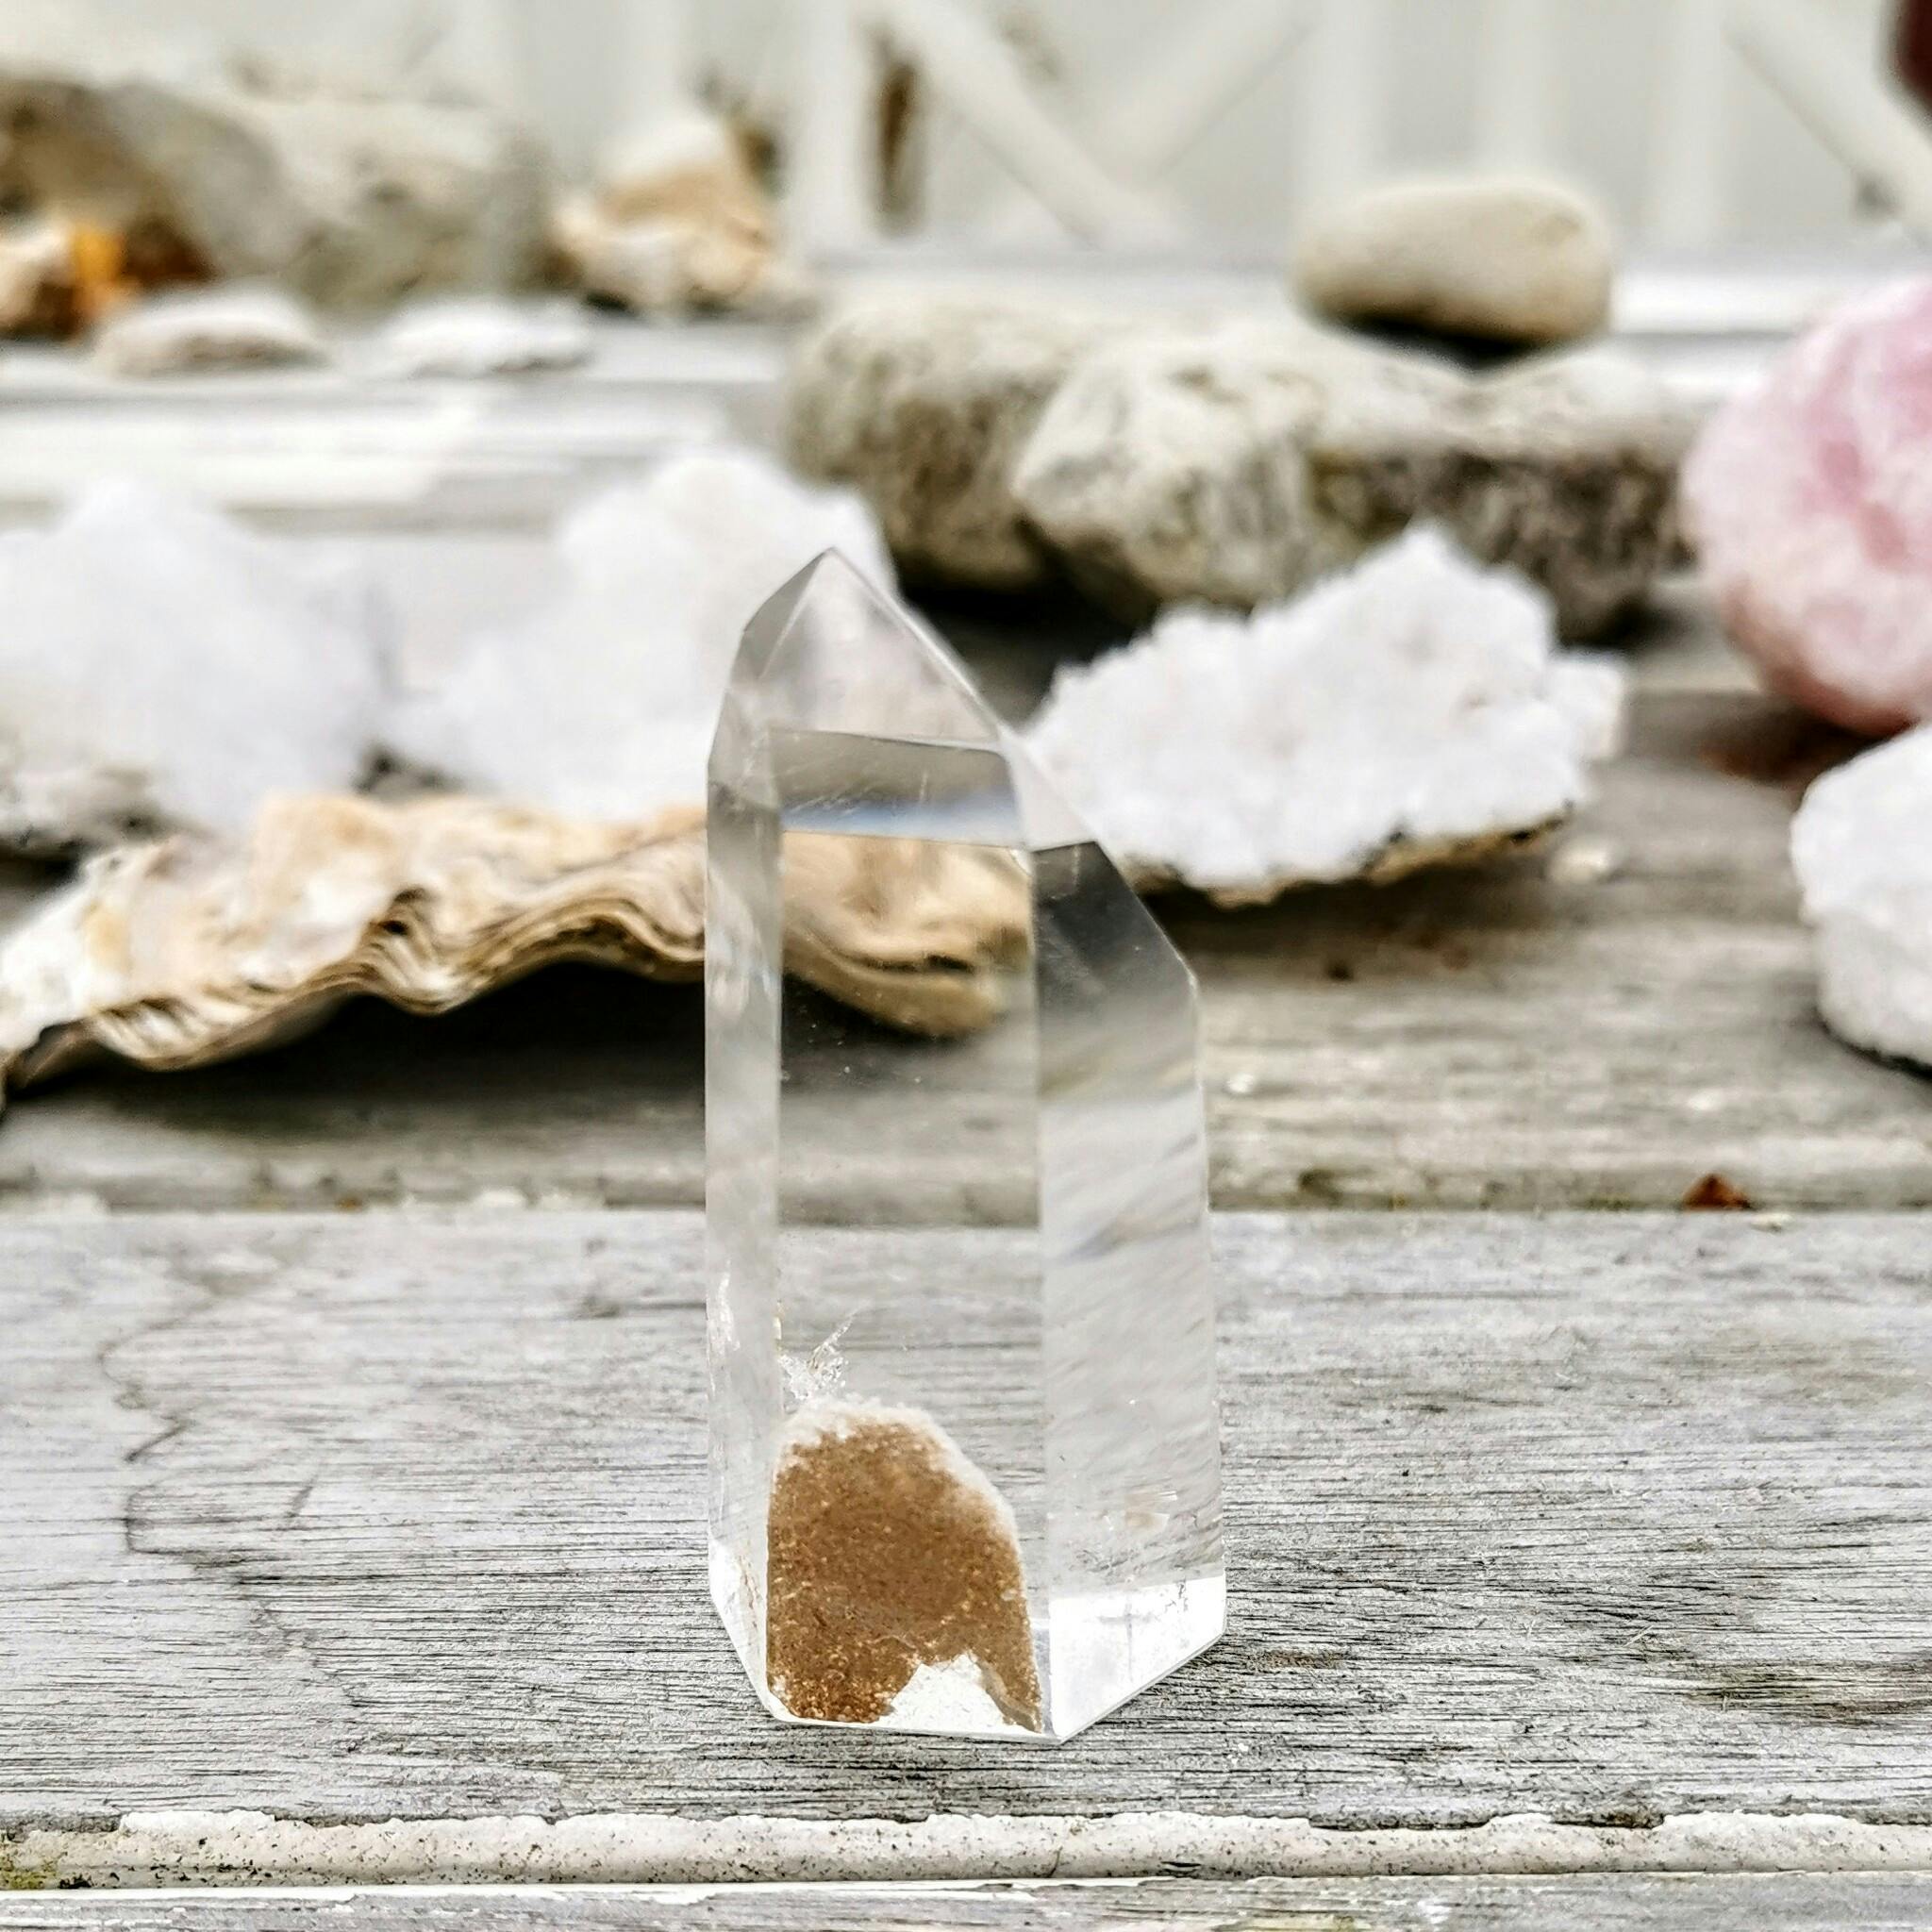 Bergkristall spets med sandfärgad fantom